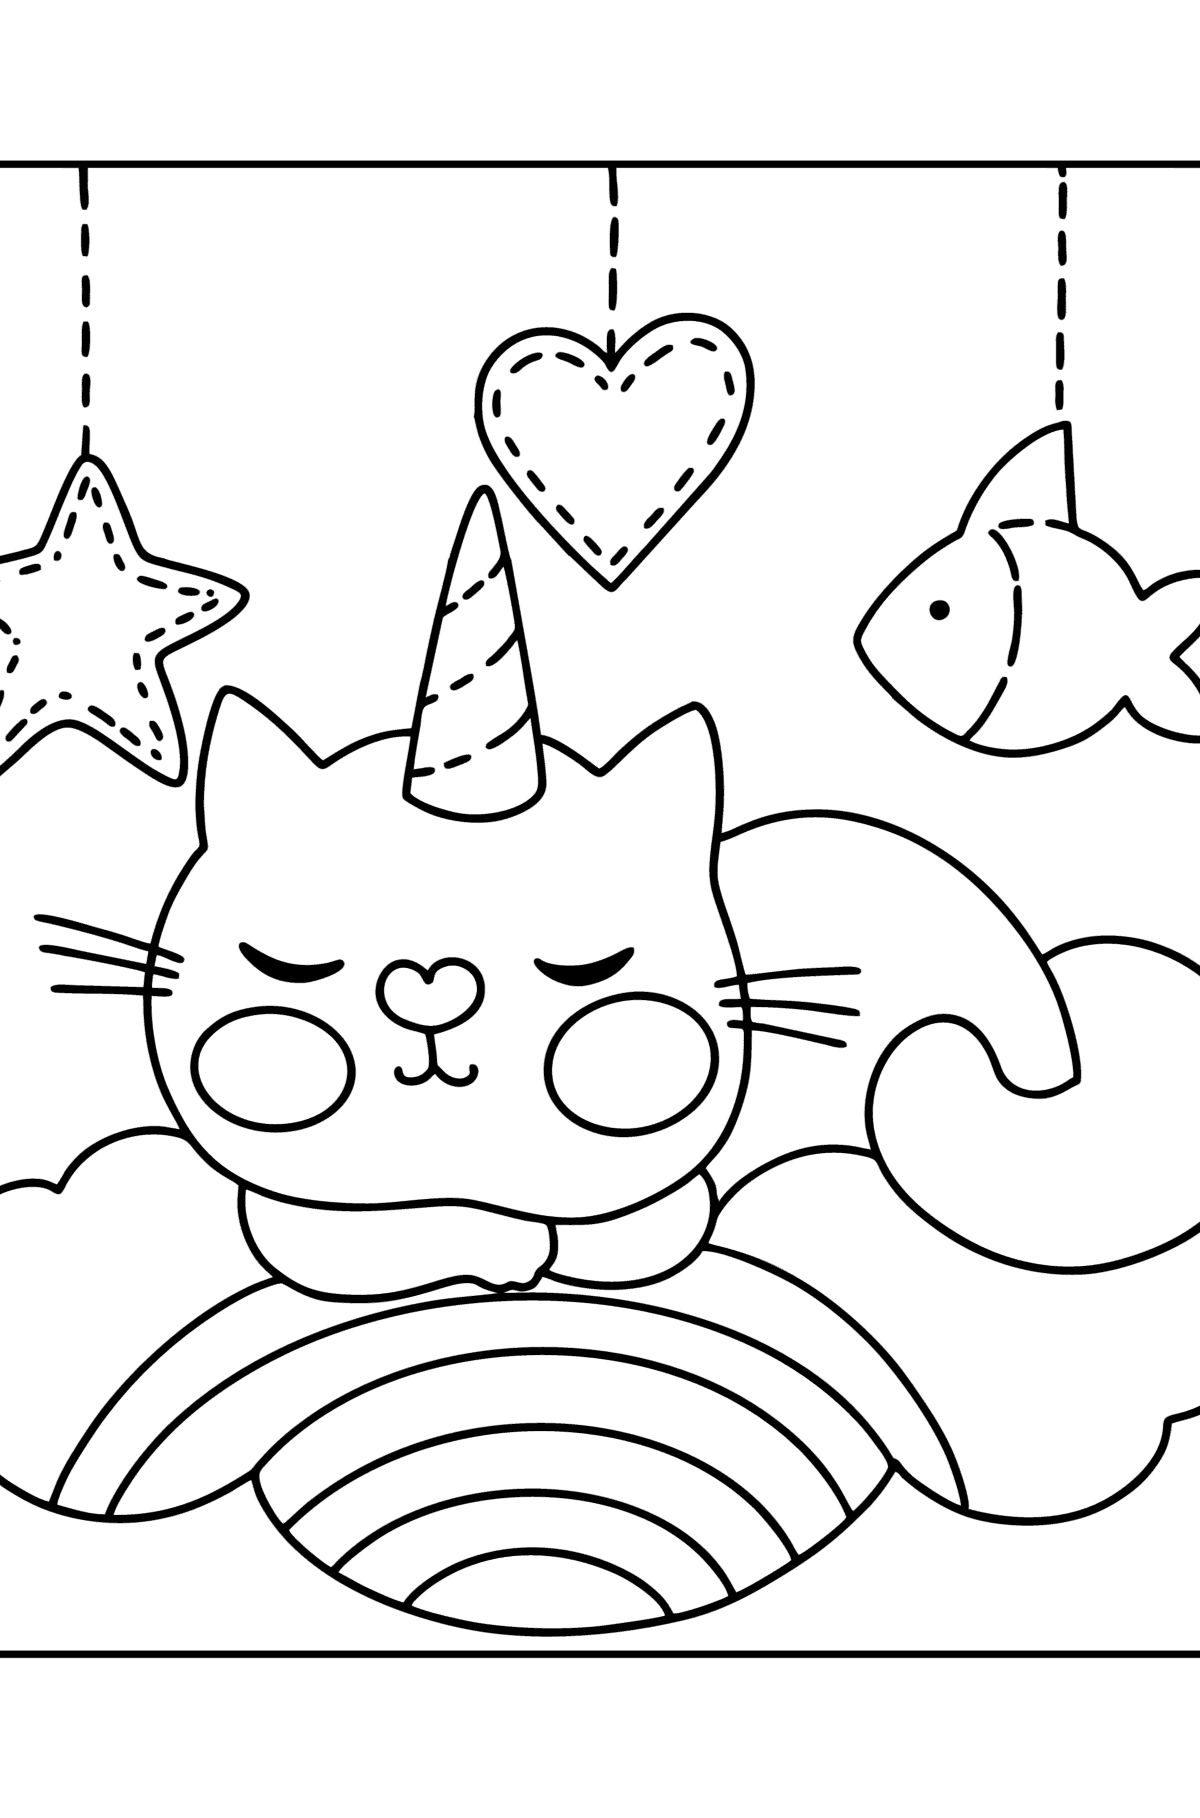 Раскраска Милый кот единорог - Картинки для Детей